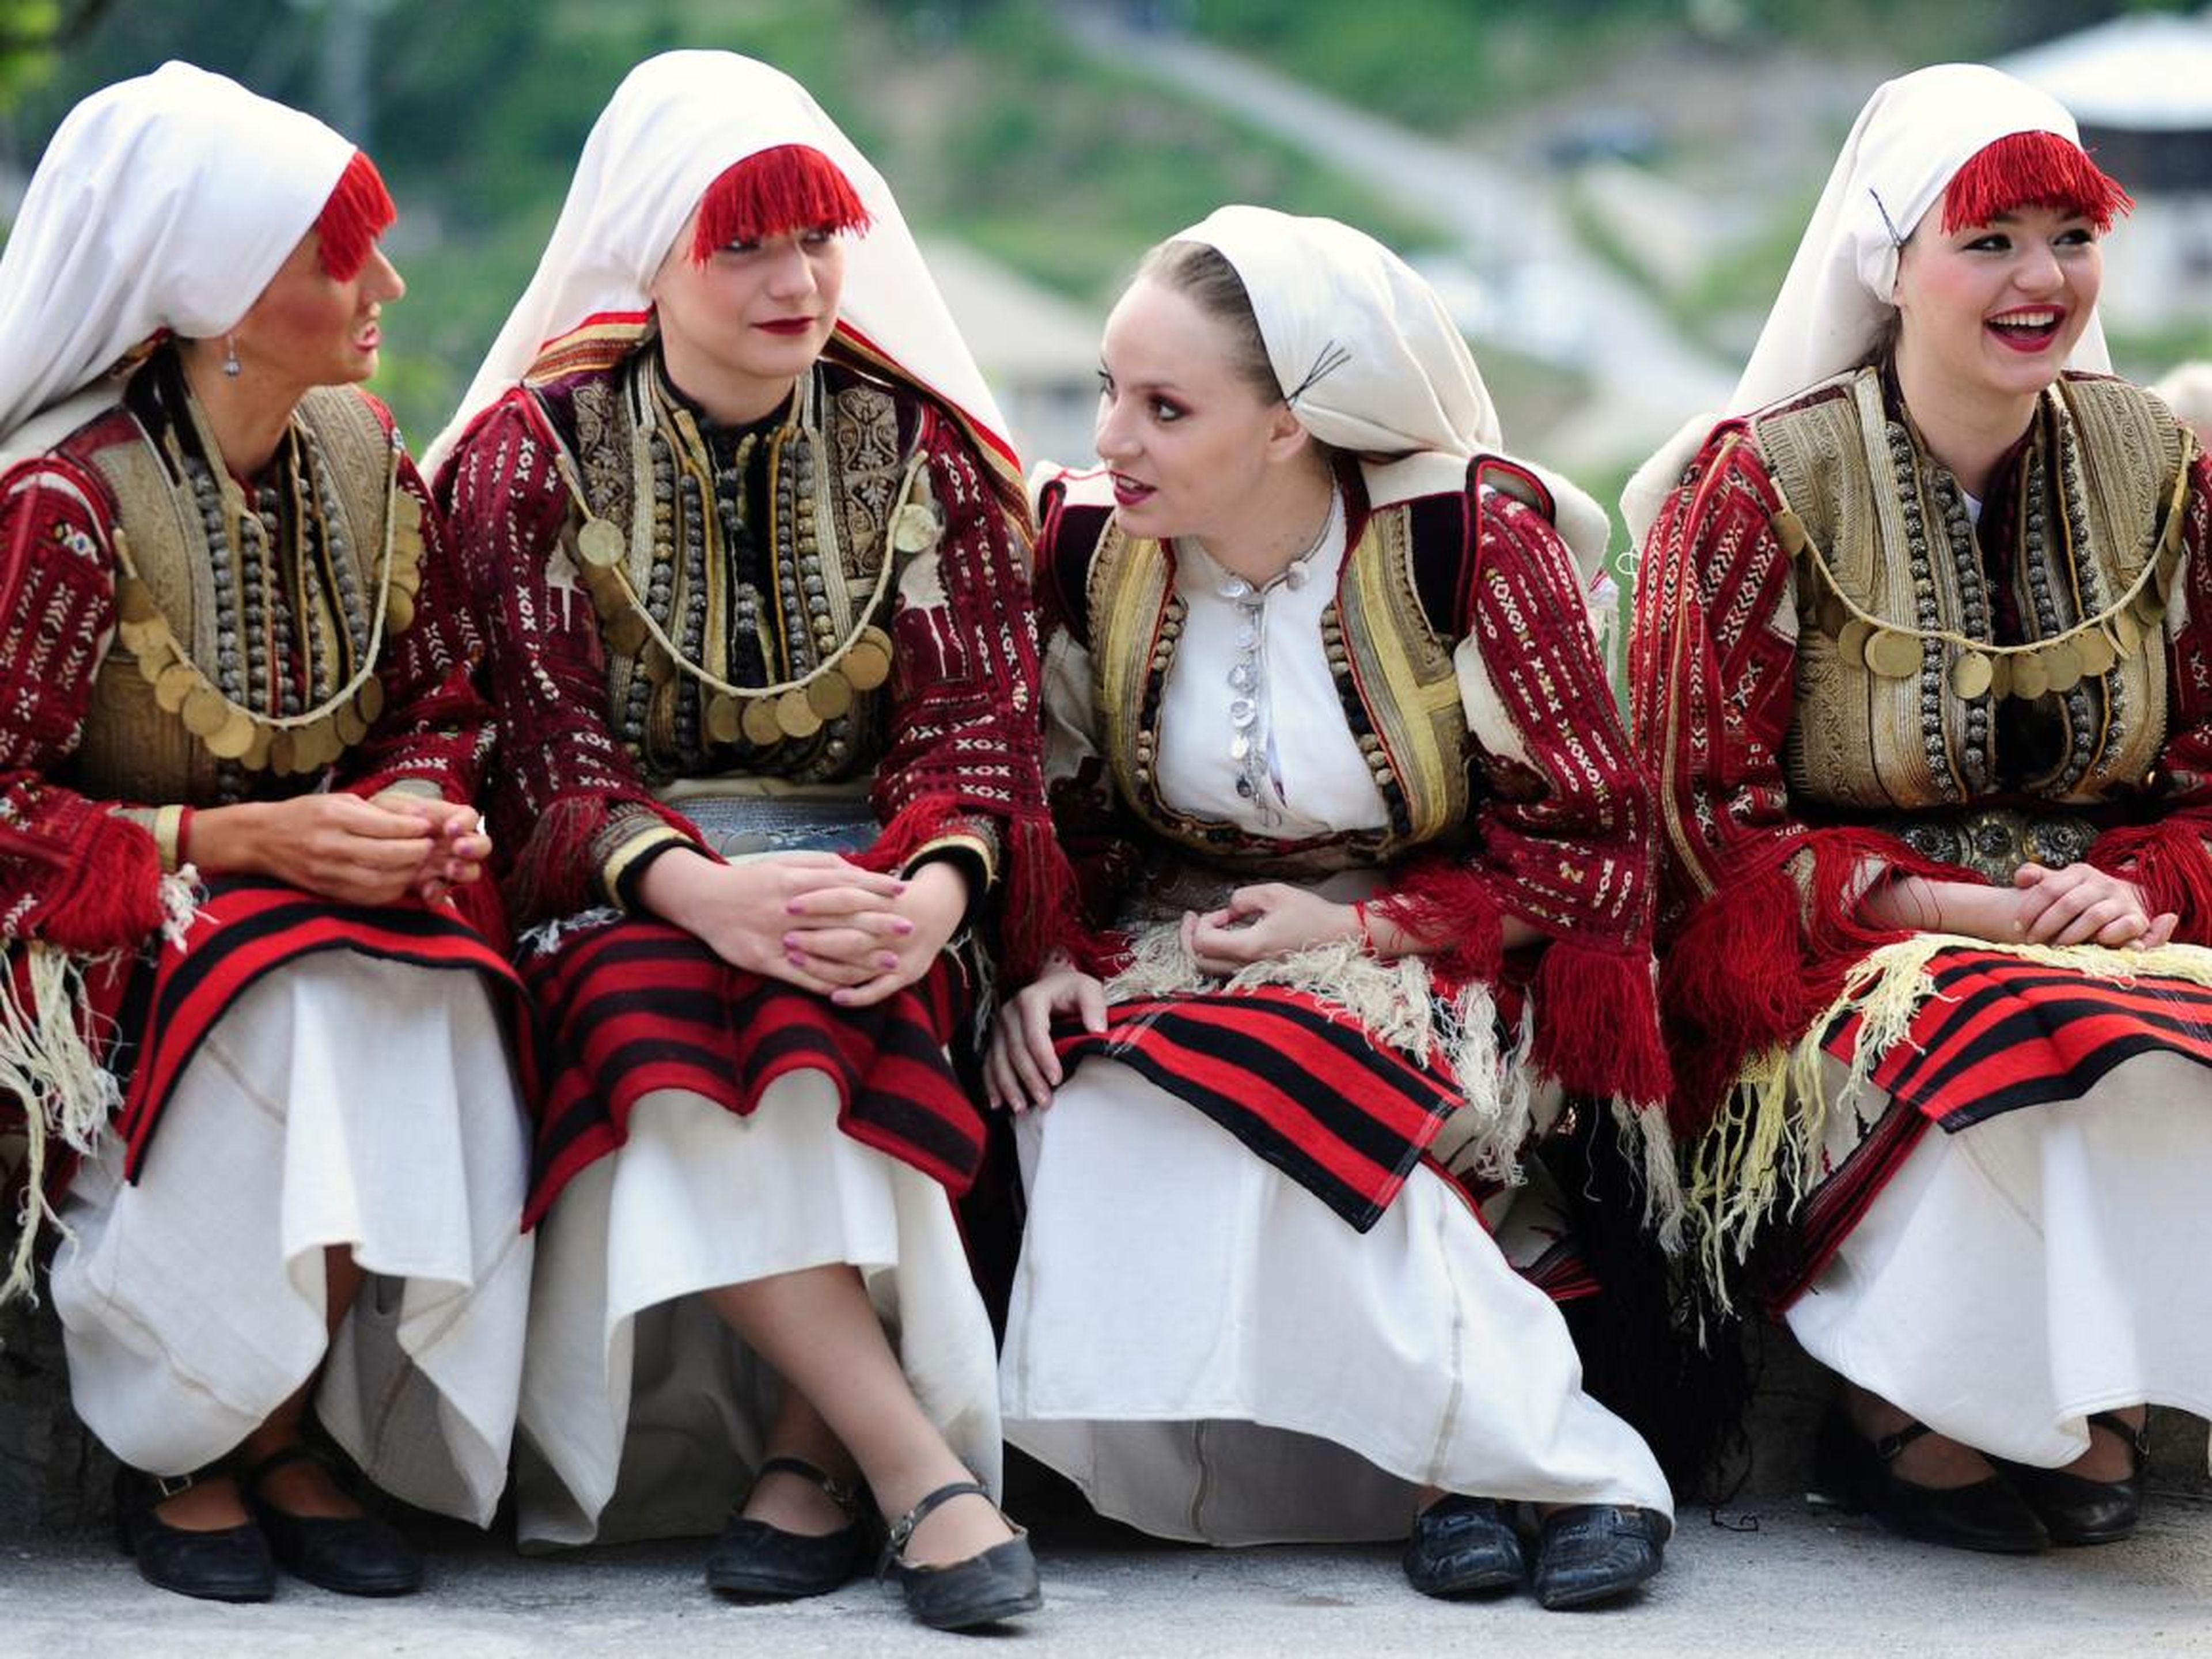 Mujeres vestidas con trajes tradicionales participan en una ceremonia de boda en Galicnik, un pueblo cerca de la capital de Macedonia.